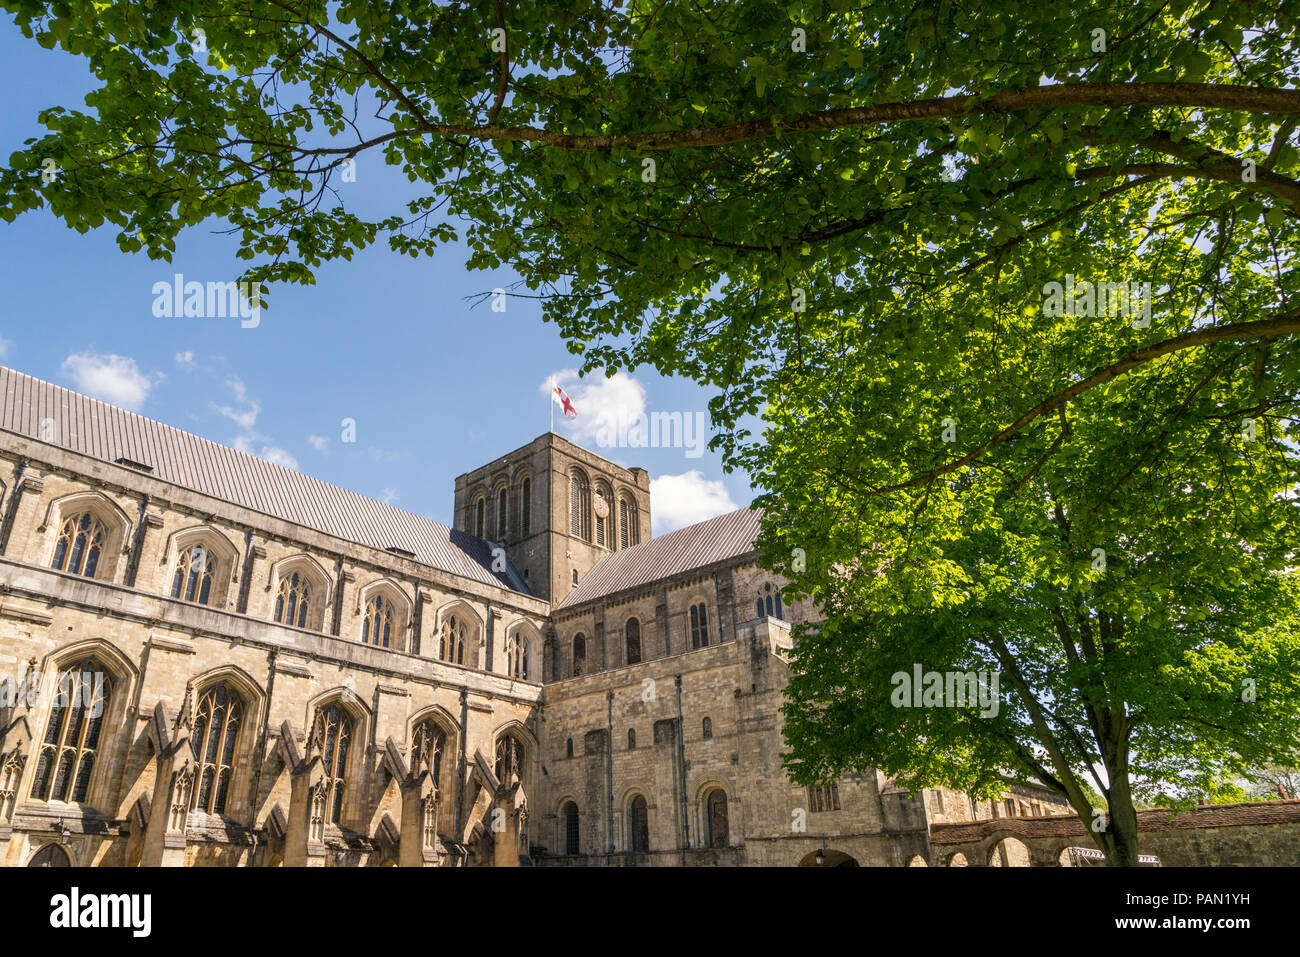 La cathédrale de Winchester dans le domaine de la recherche de l'intermédiaire d'un arbre à la Croix St Georges Drapeau de l'Angleterre Banque D'Images